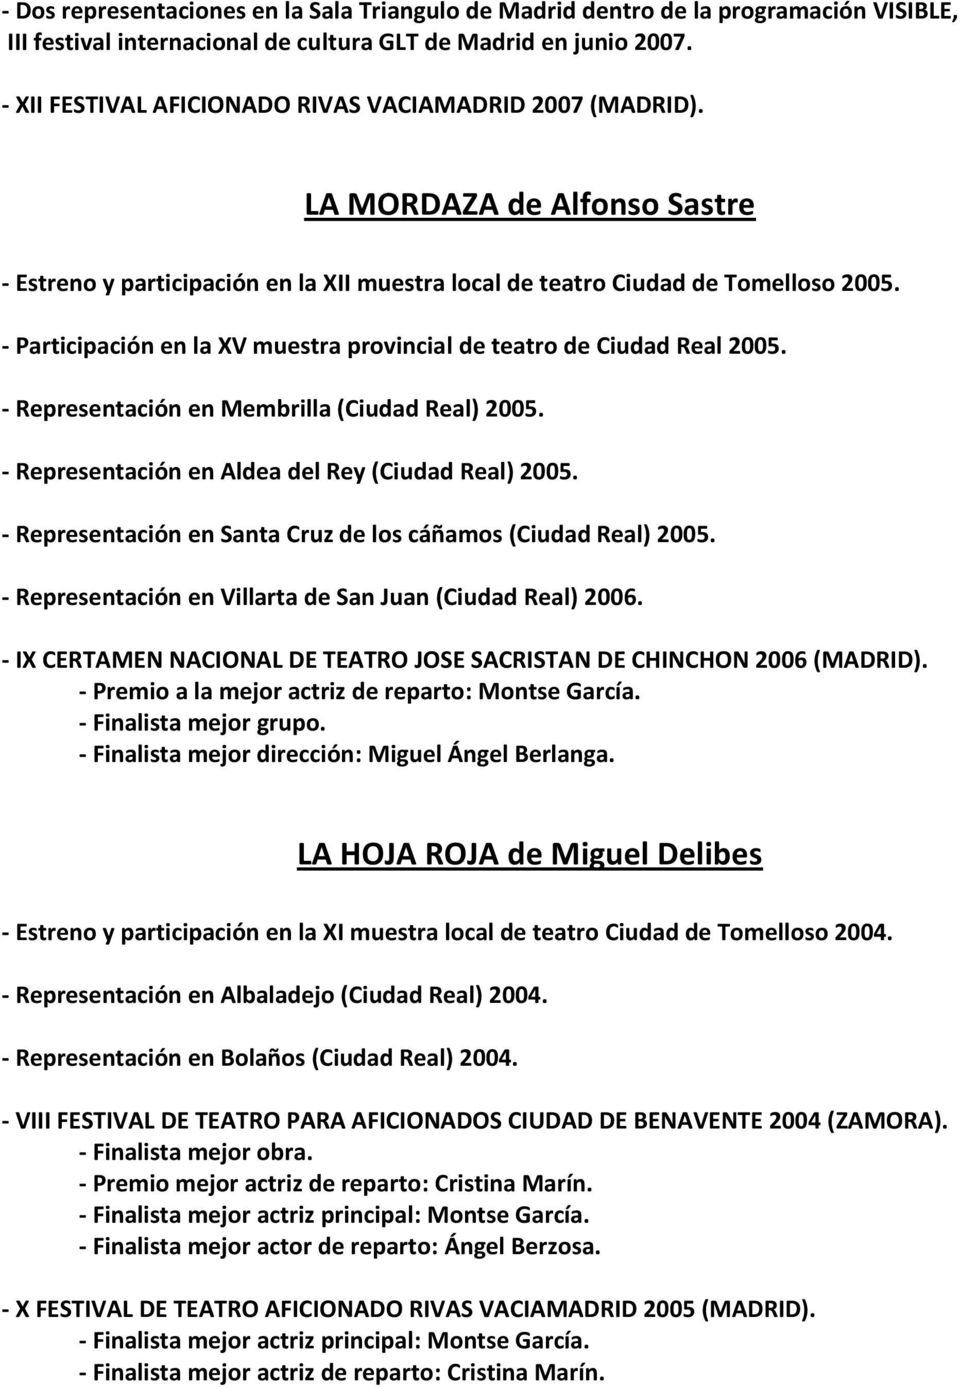 - Participación en la XV muestra provincial de teatro de Ciudad Real 2005. - Representación en Membrilla (Ciudad Real) 2005. - Representación en Aldea del Rey (Ciudad Real) 2005.